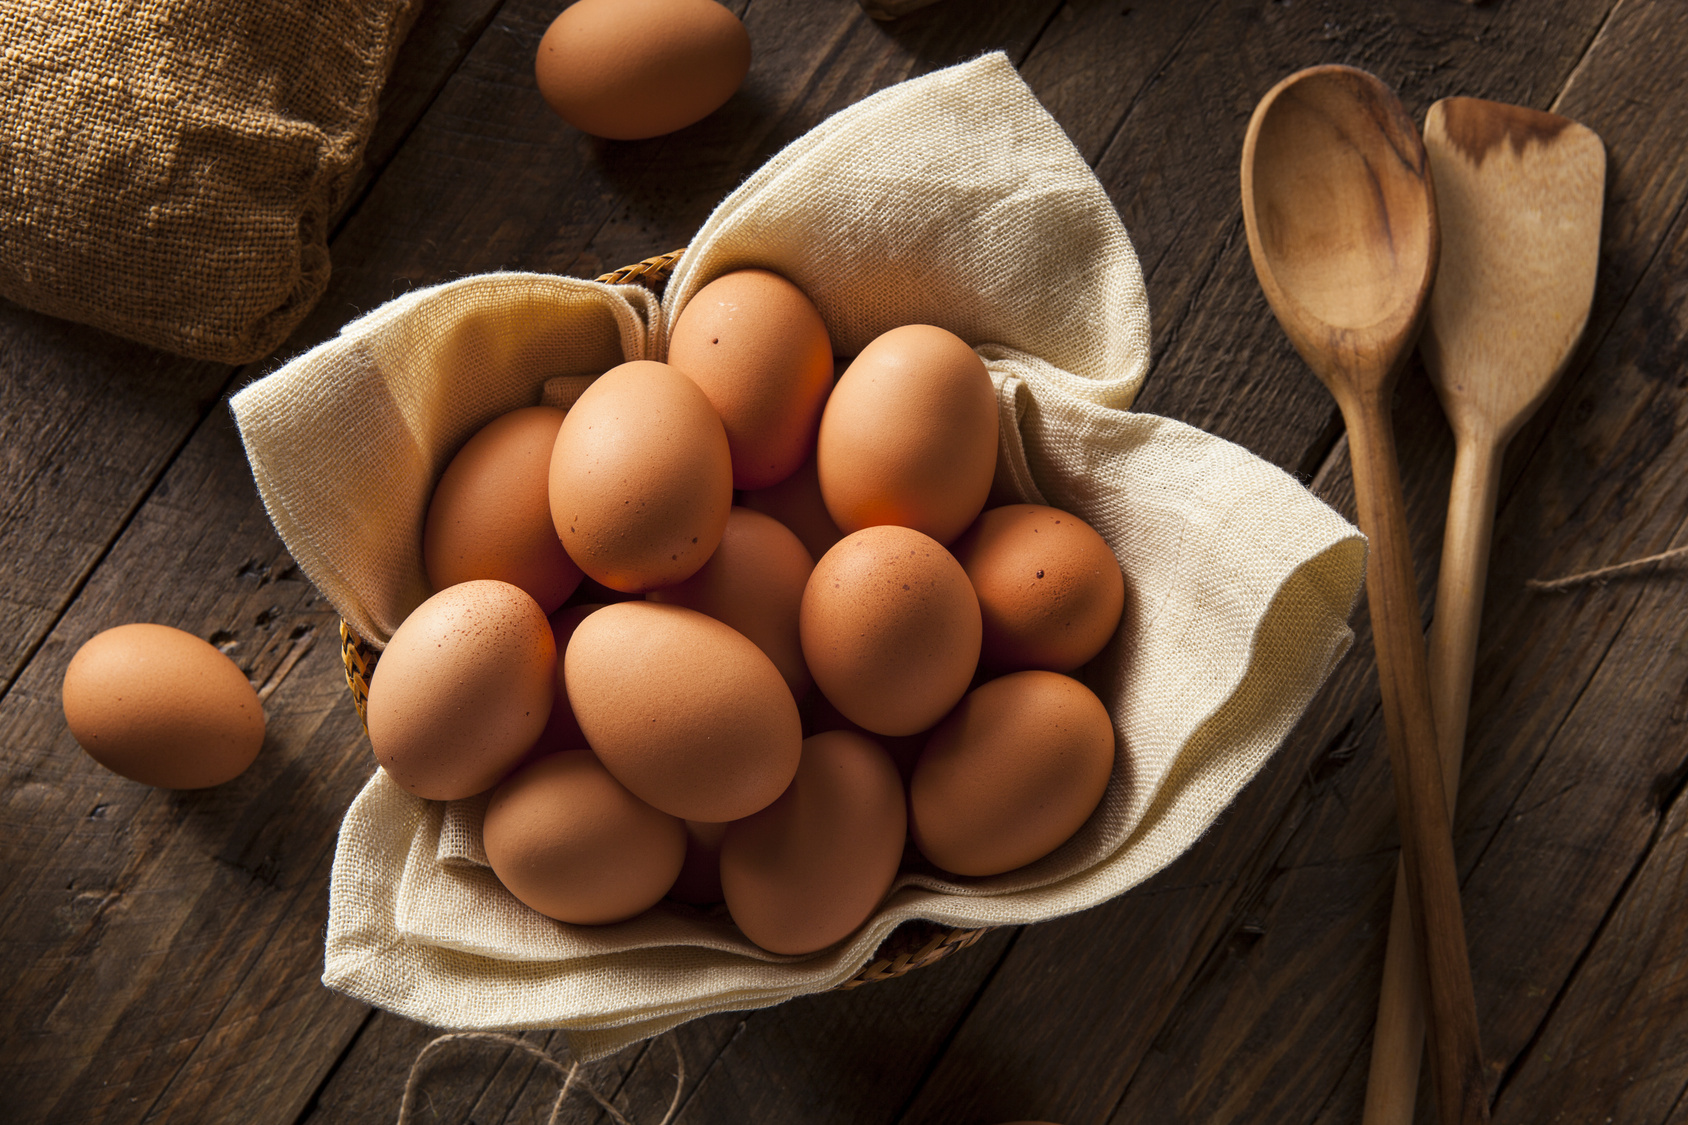 Le uova che stai usando sono fresche? Ecco 4 semplici trucchi per